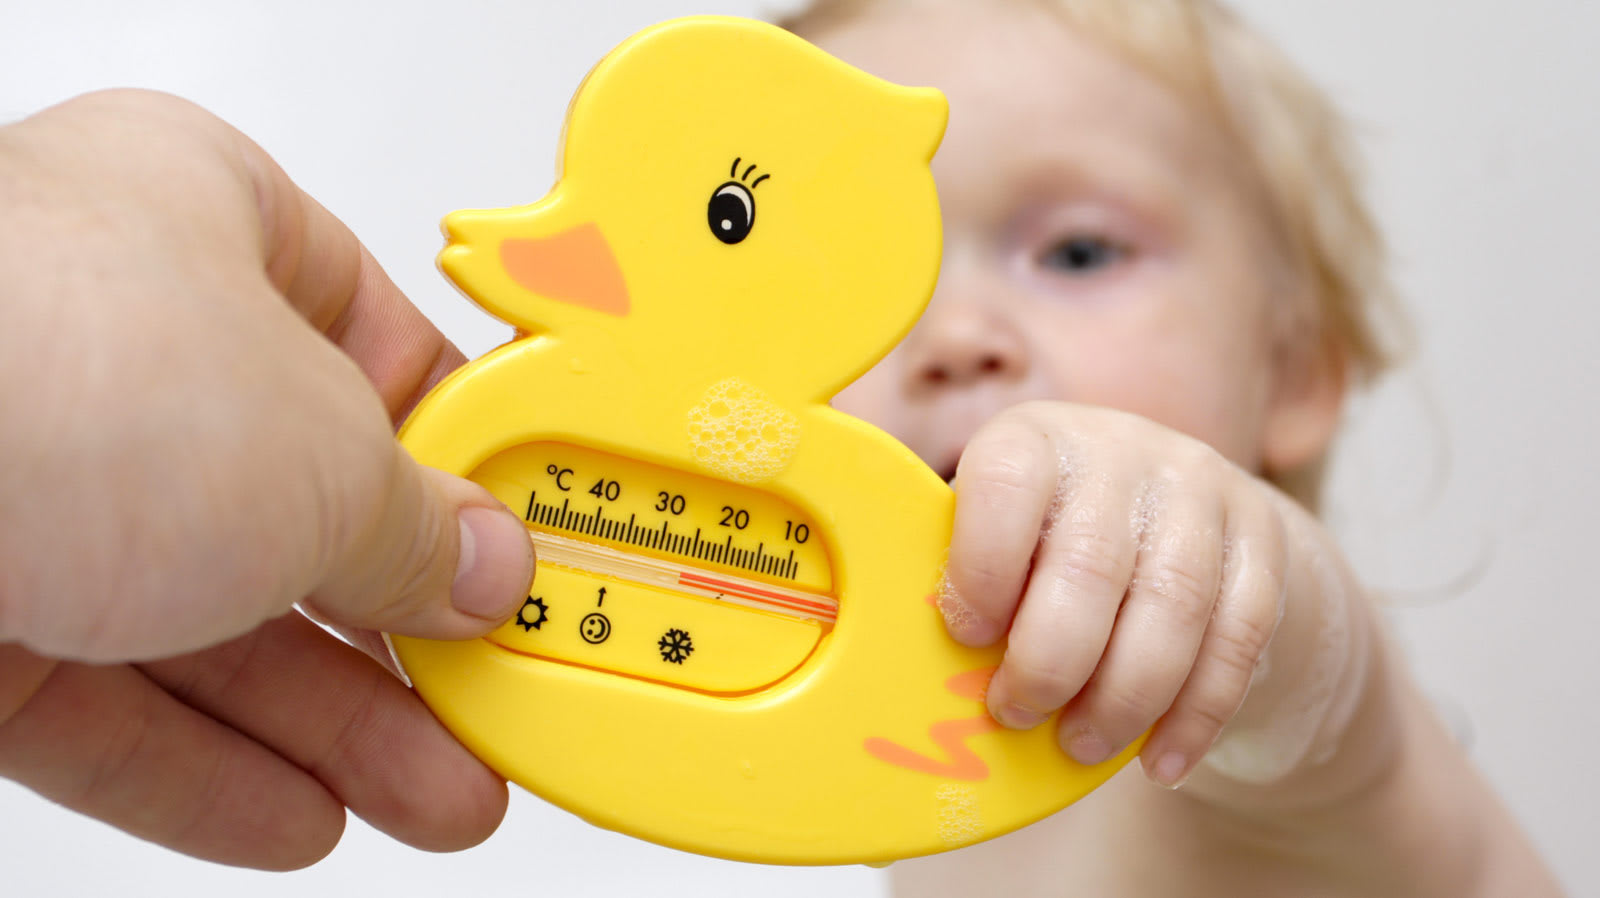 Criança segurando termómetro com formato de pato